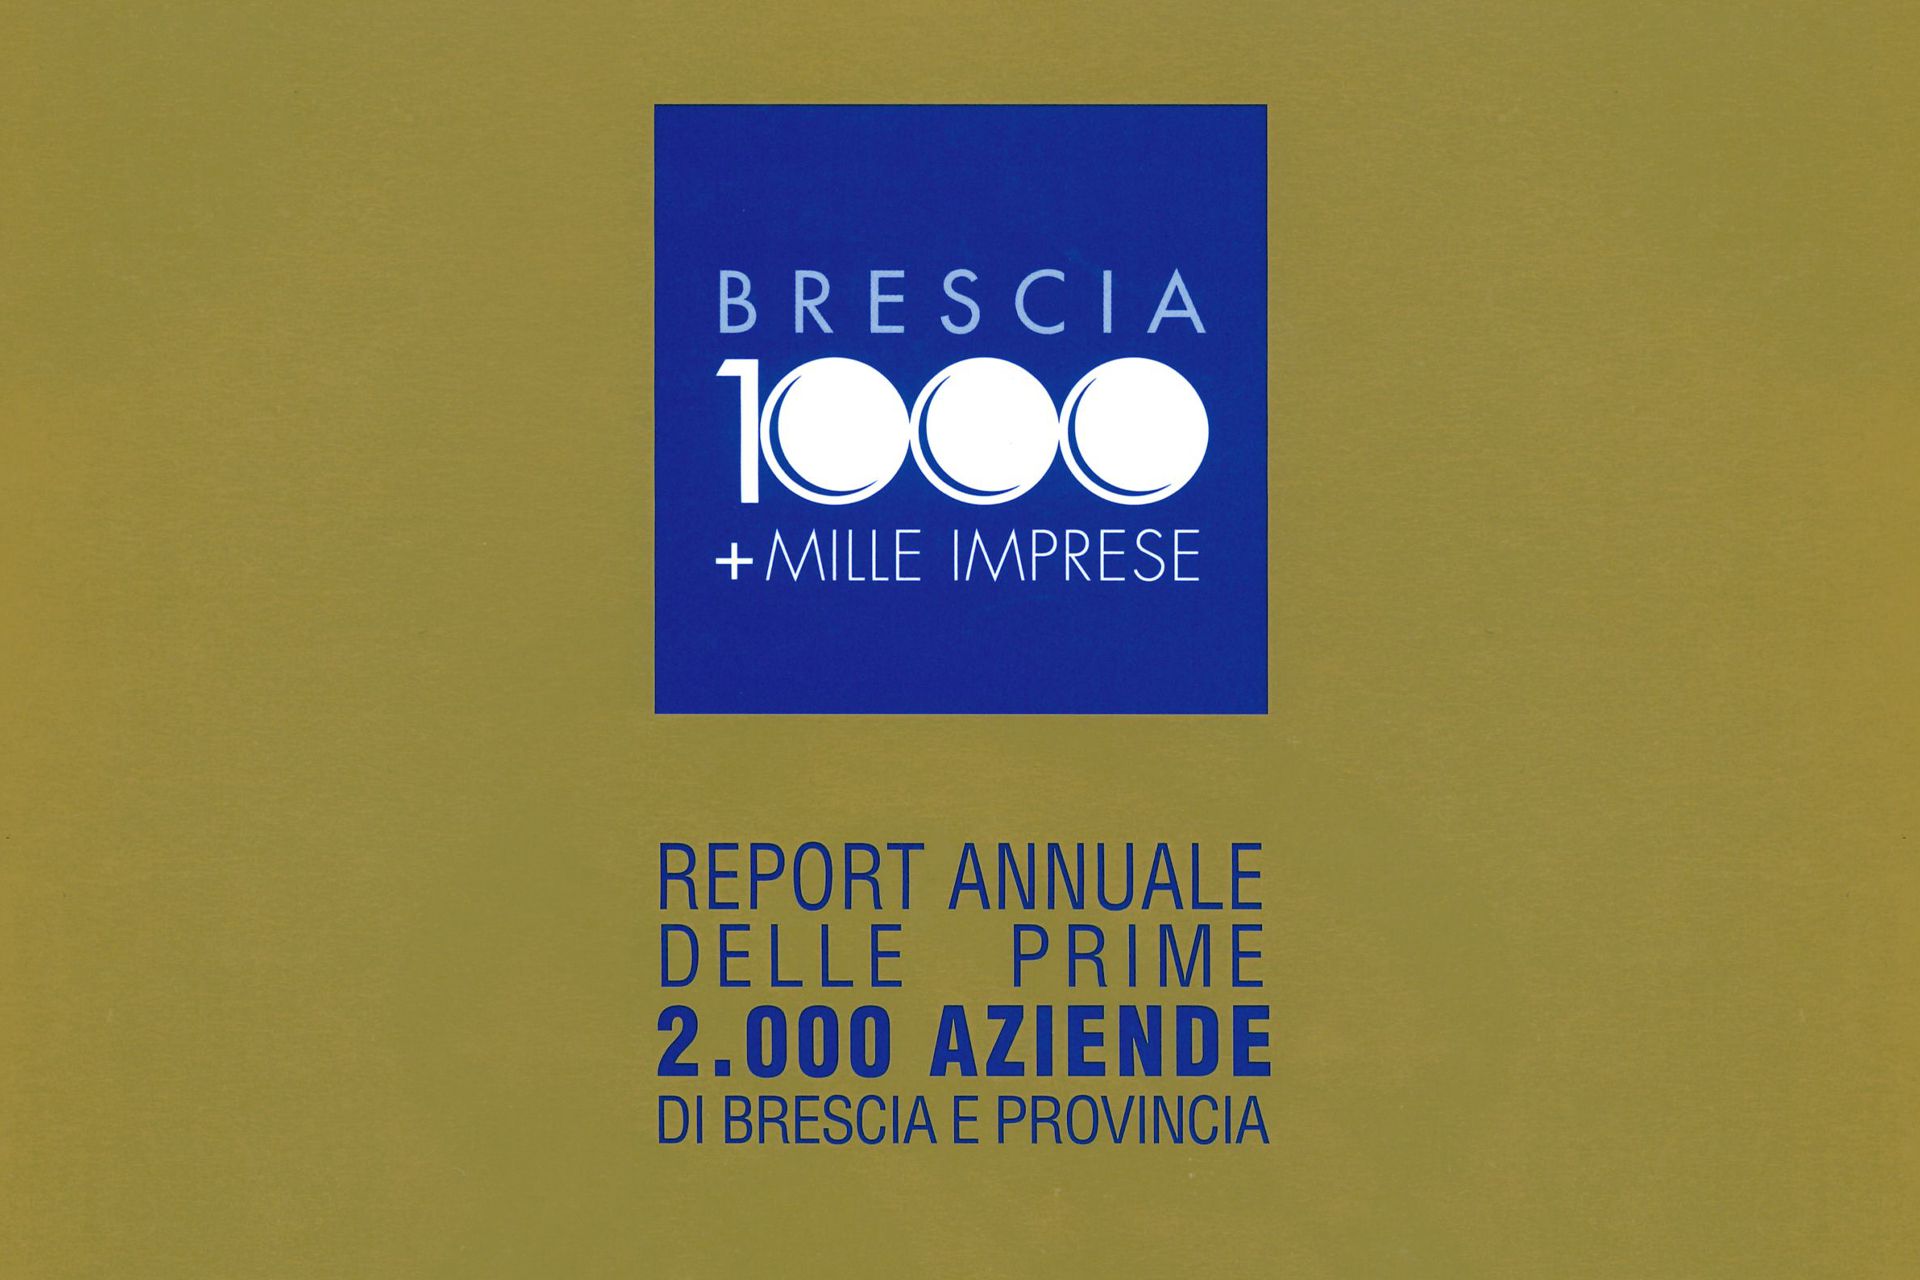 brescia-1000-imprese-2021-adv